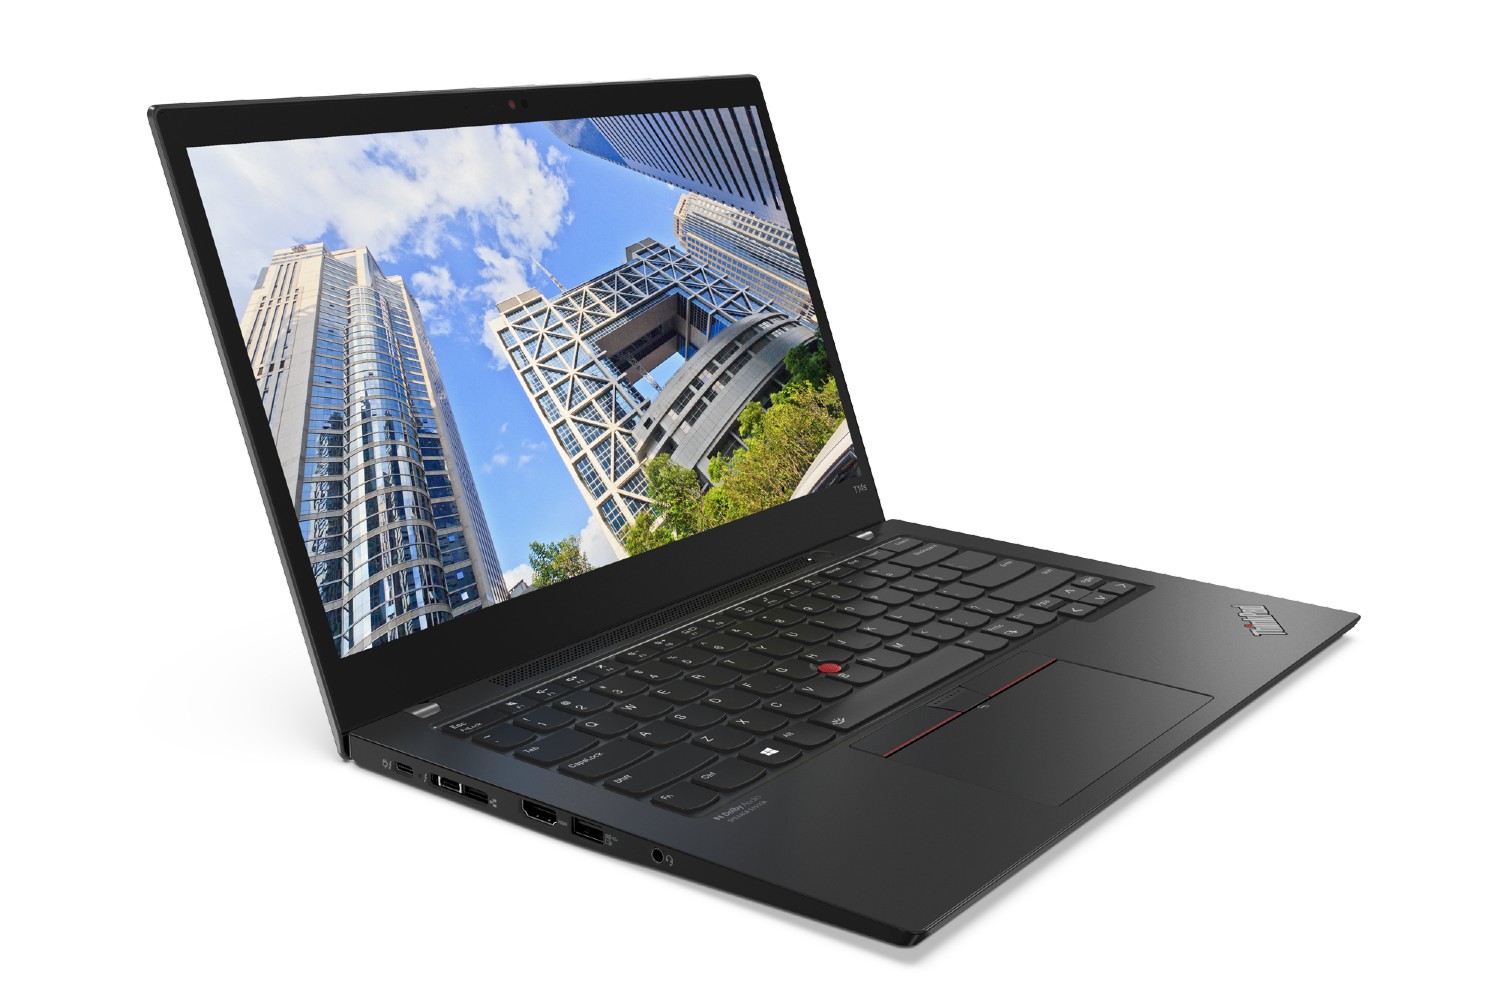 لپ تاپ Lenovo ThinkPad T14s Gen 2 با منظره شهری در نمایشگر.